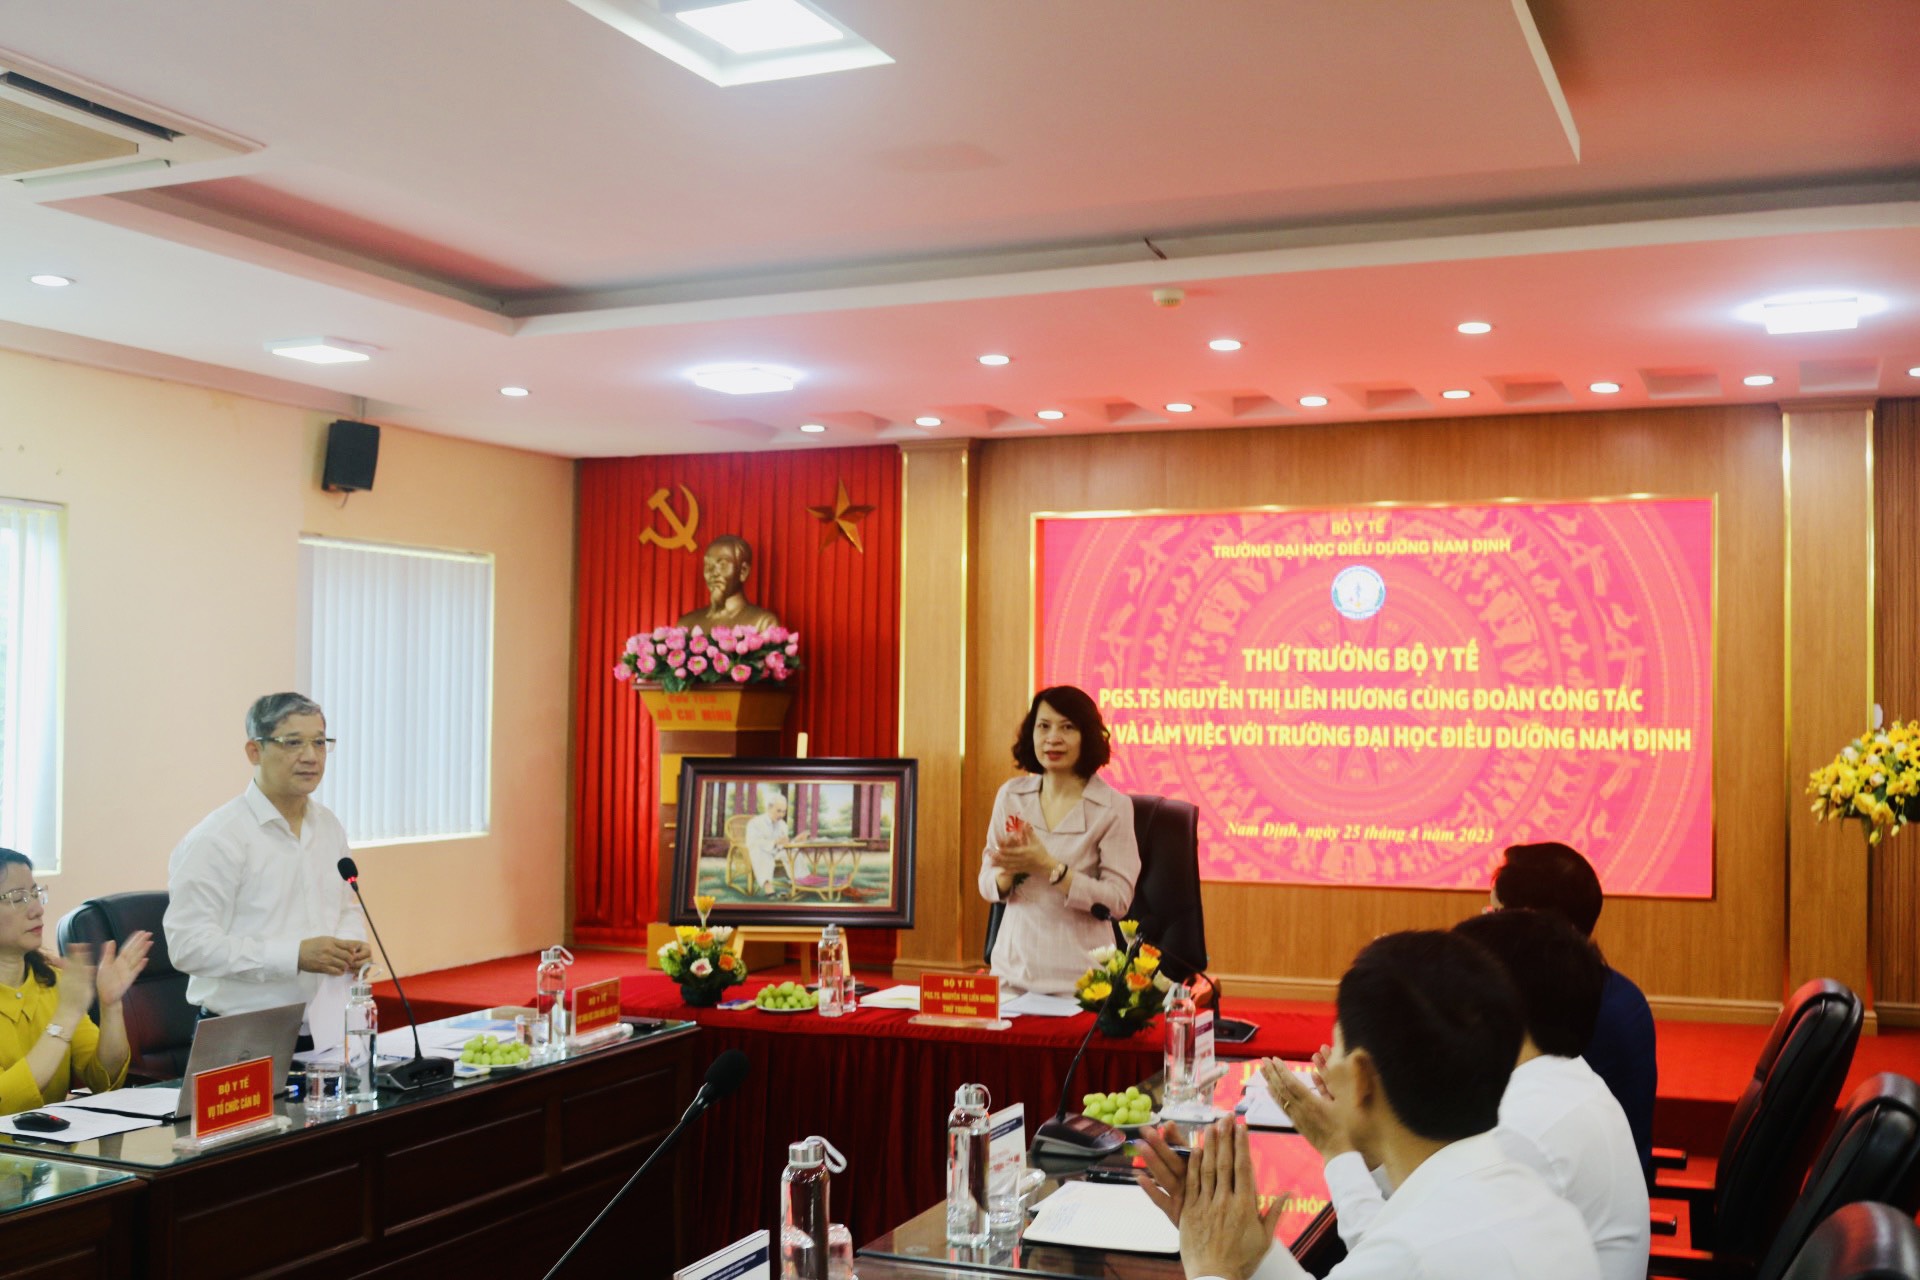 Đại học Điều dưỡng Nam Định rà soát chương trình đào tạo, tiếp tục đổi mới dạy đáp ứng hội nhập - Ảnh 2.